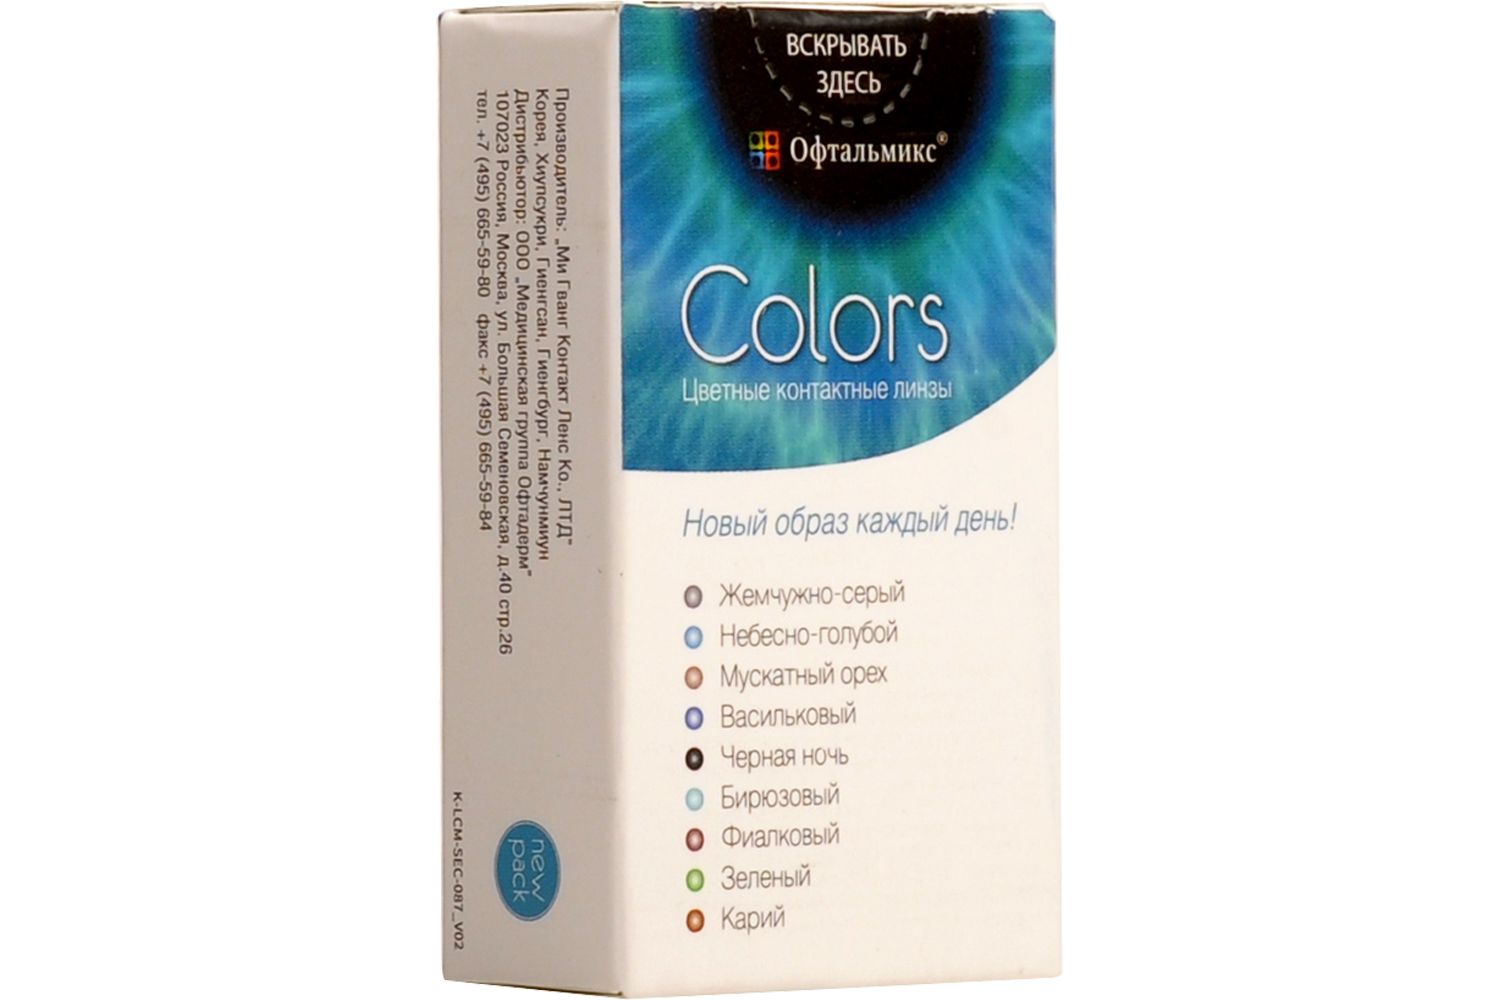 Купить Colors 2 линзы, Цветные контактные линзы Офтальмикс Colors, 2 шт. PWR -1, 00, R 8.6, Cloud